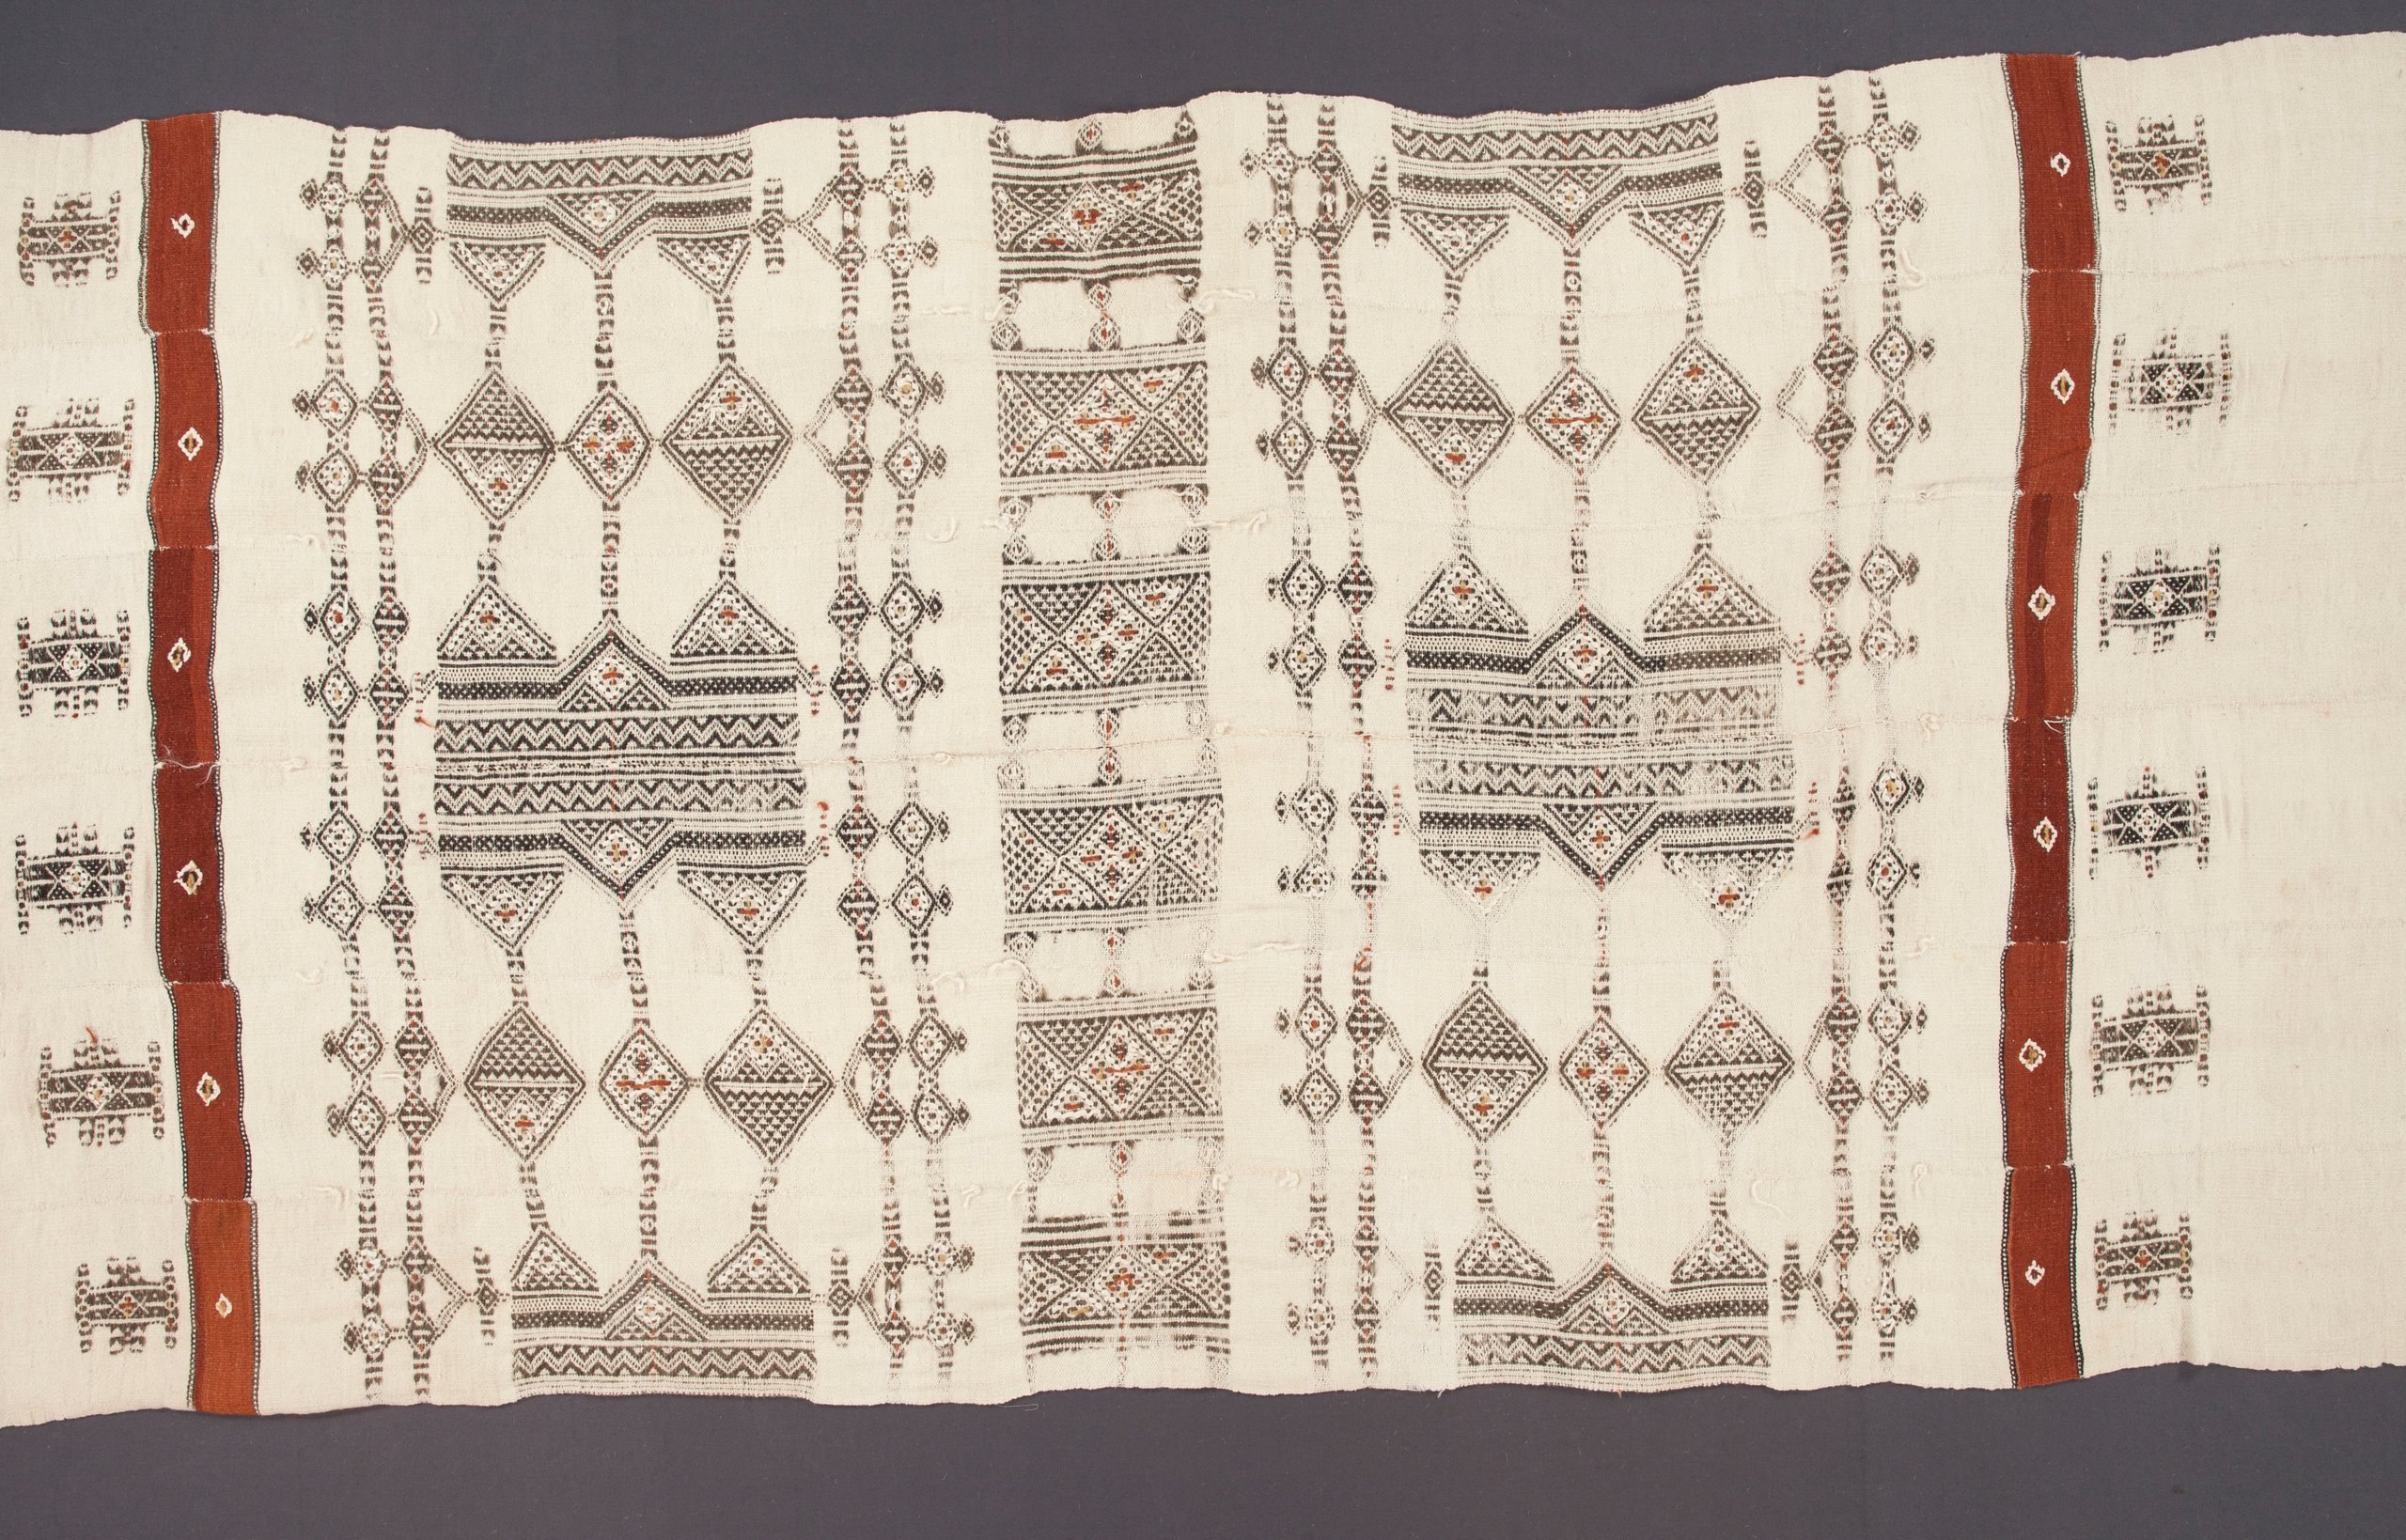 Fulani blanket or khasa from Mali, West Africa